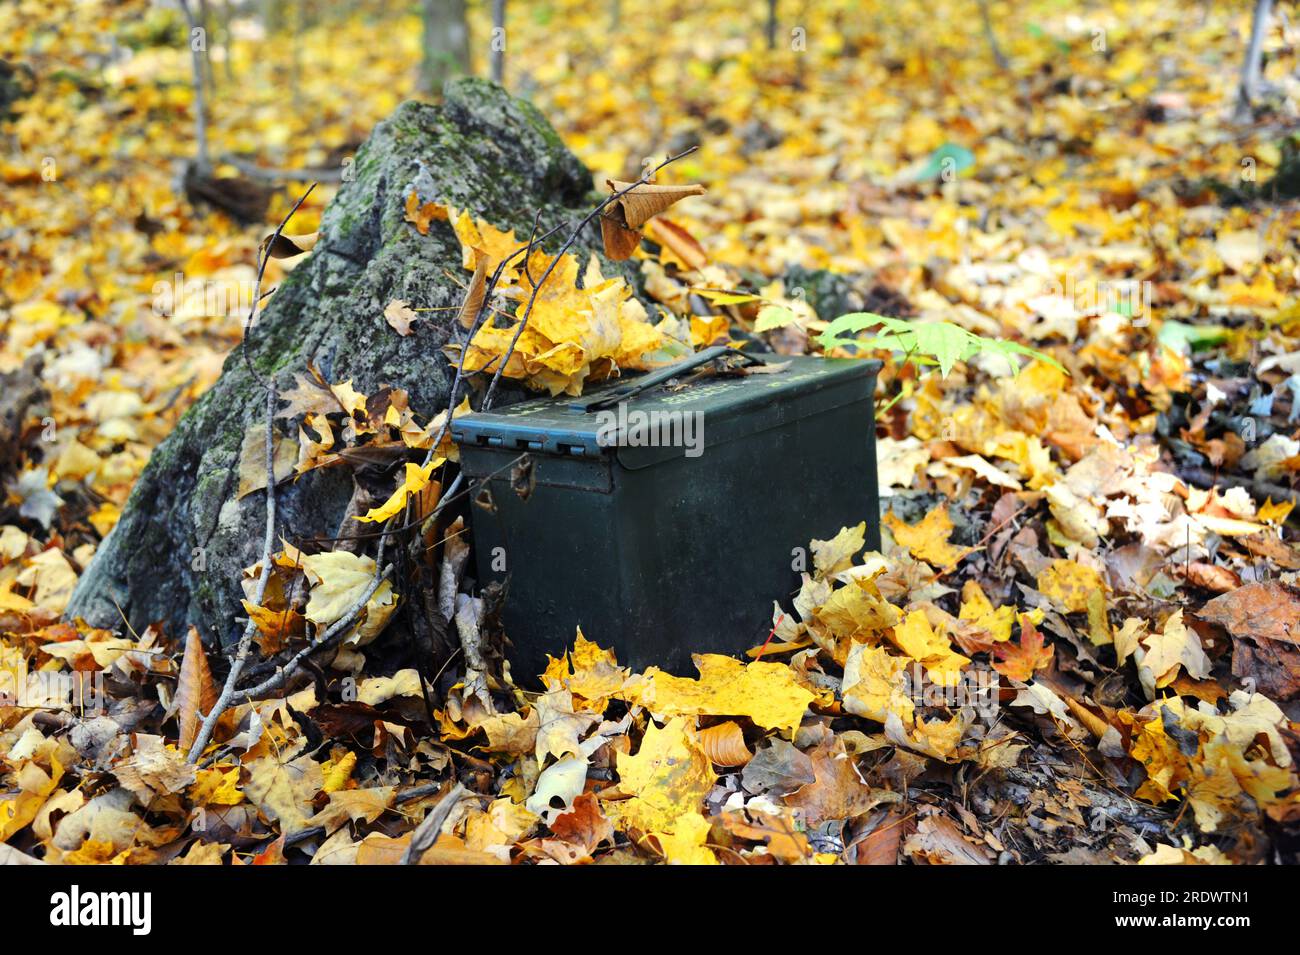 La scatola di munizioni militari funge da geocache nascosto tra le montagne del Tennessee. Le foglie d'autunno dorate circondano la scatola metallica. Foto Stock